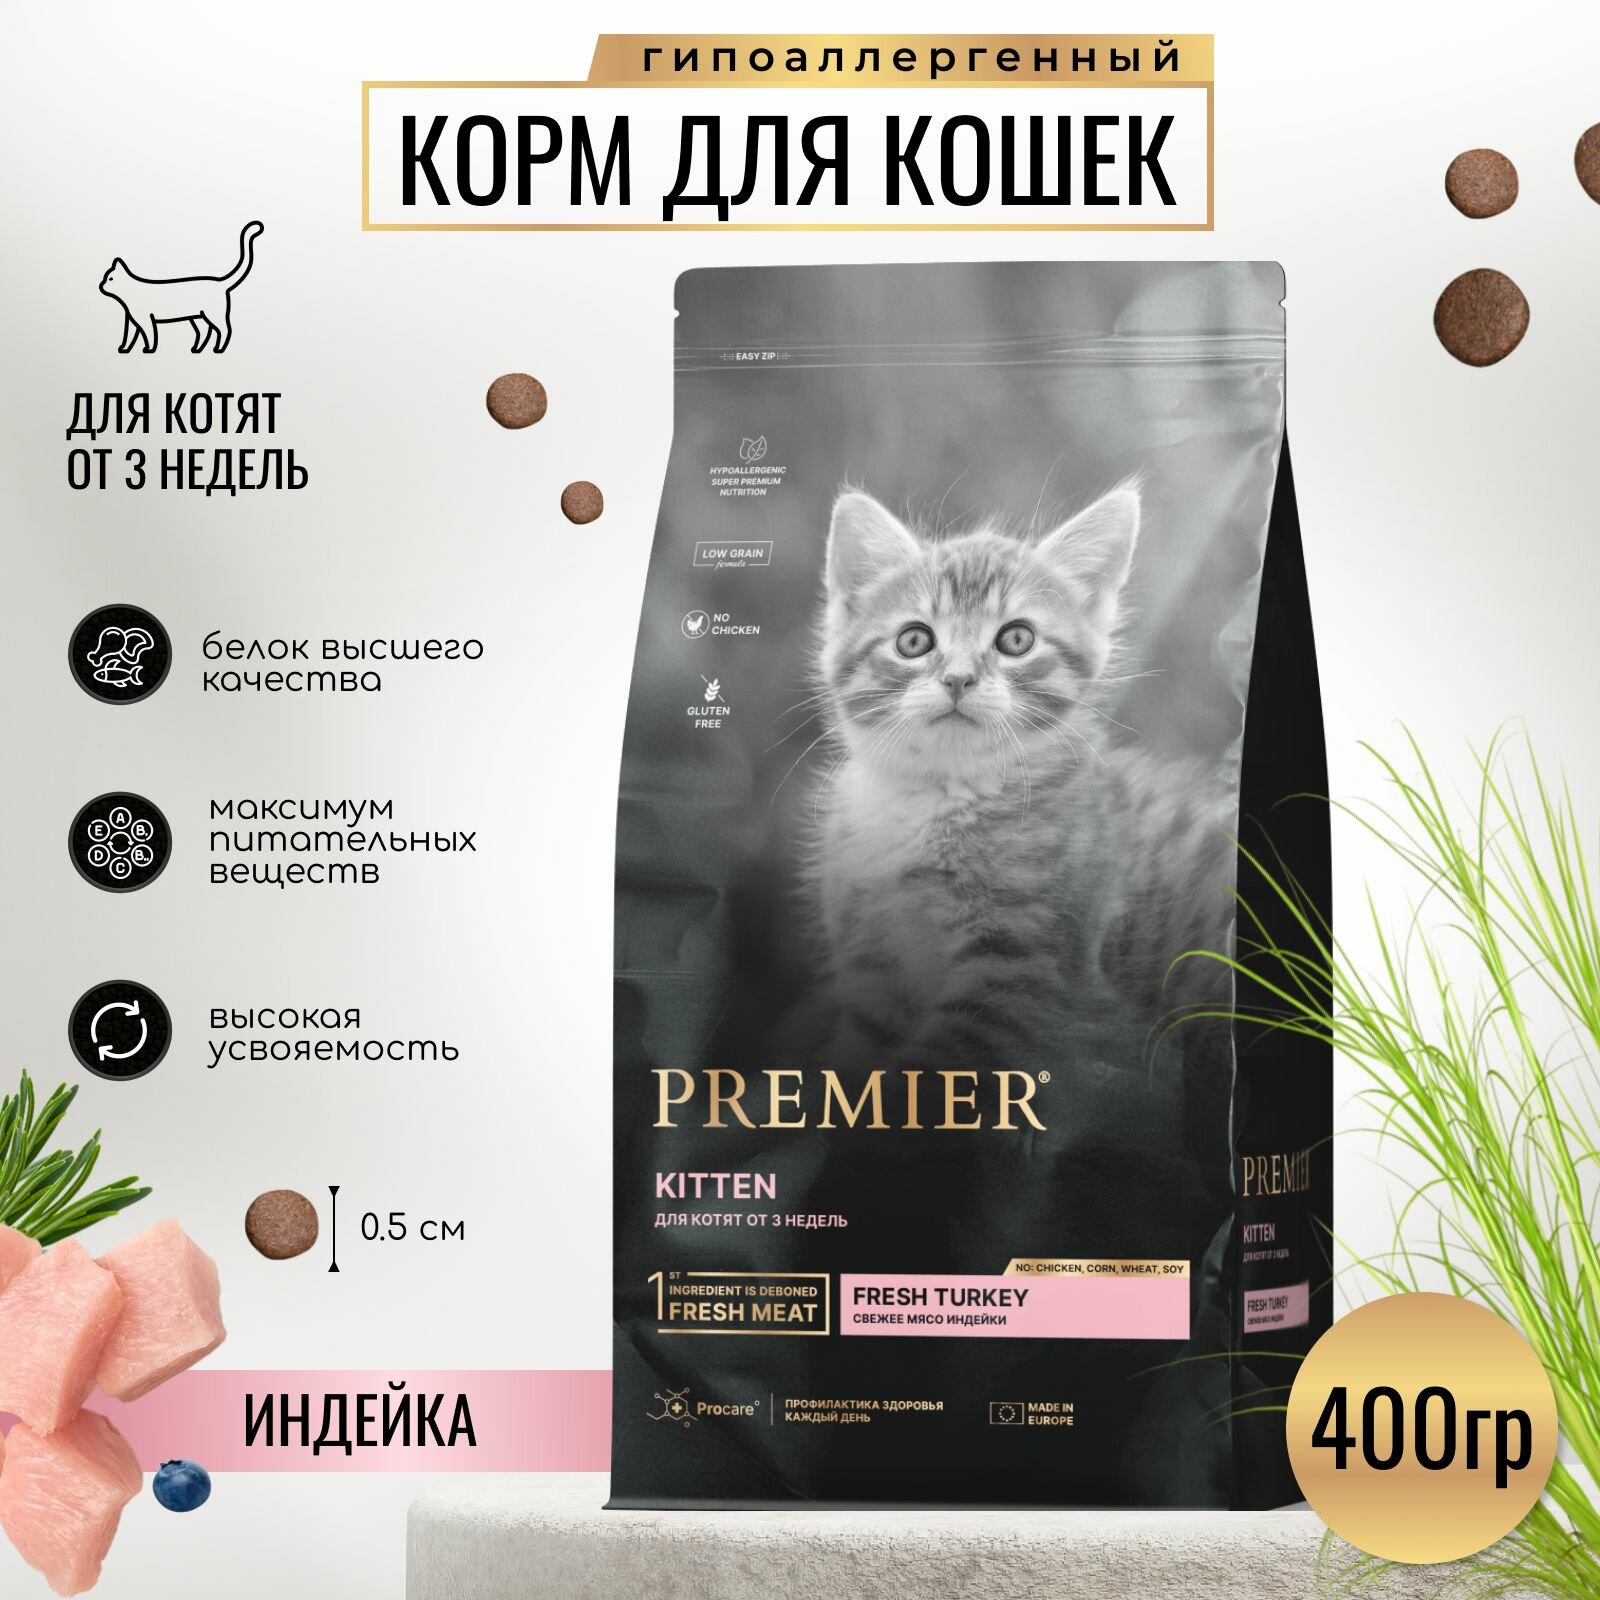 Сухой корм PREMIER для котят от 3 недель, беременных и кормящих кошек 400гр.